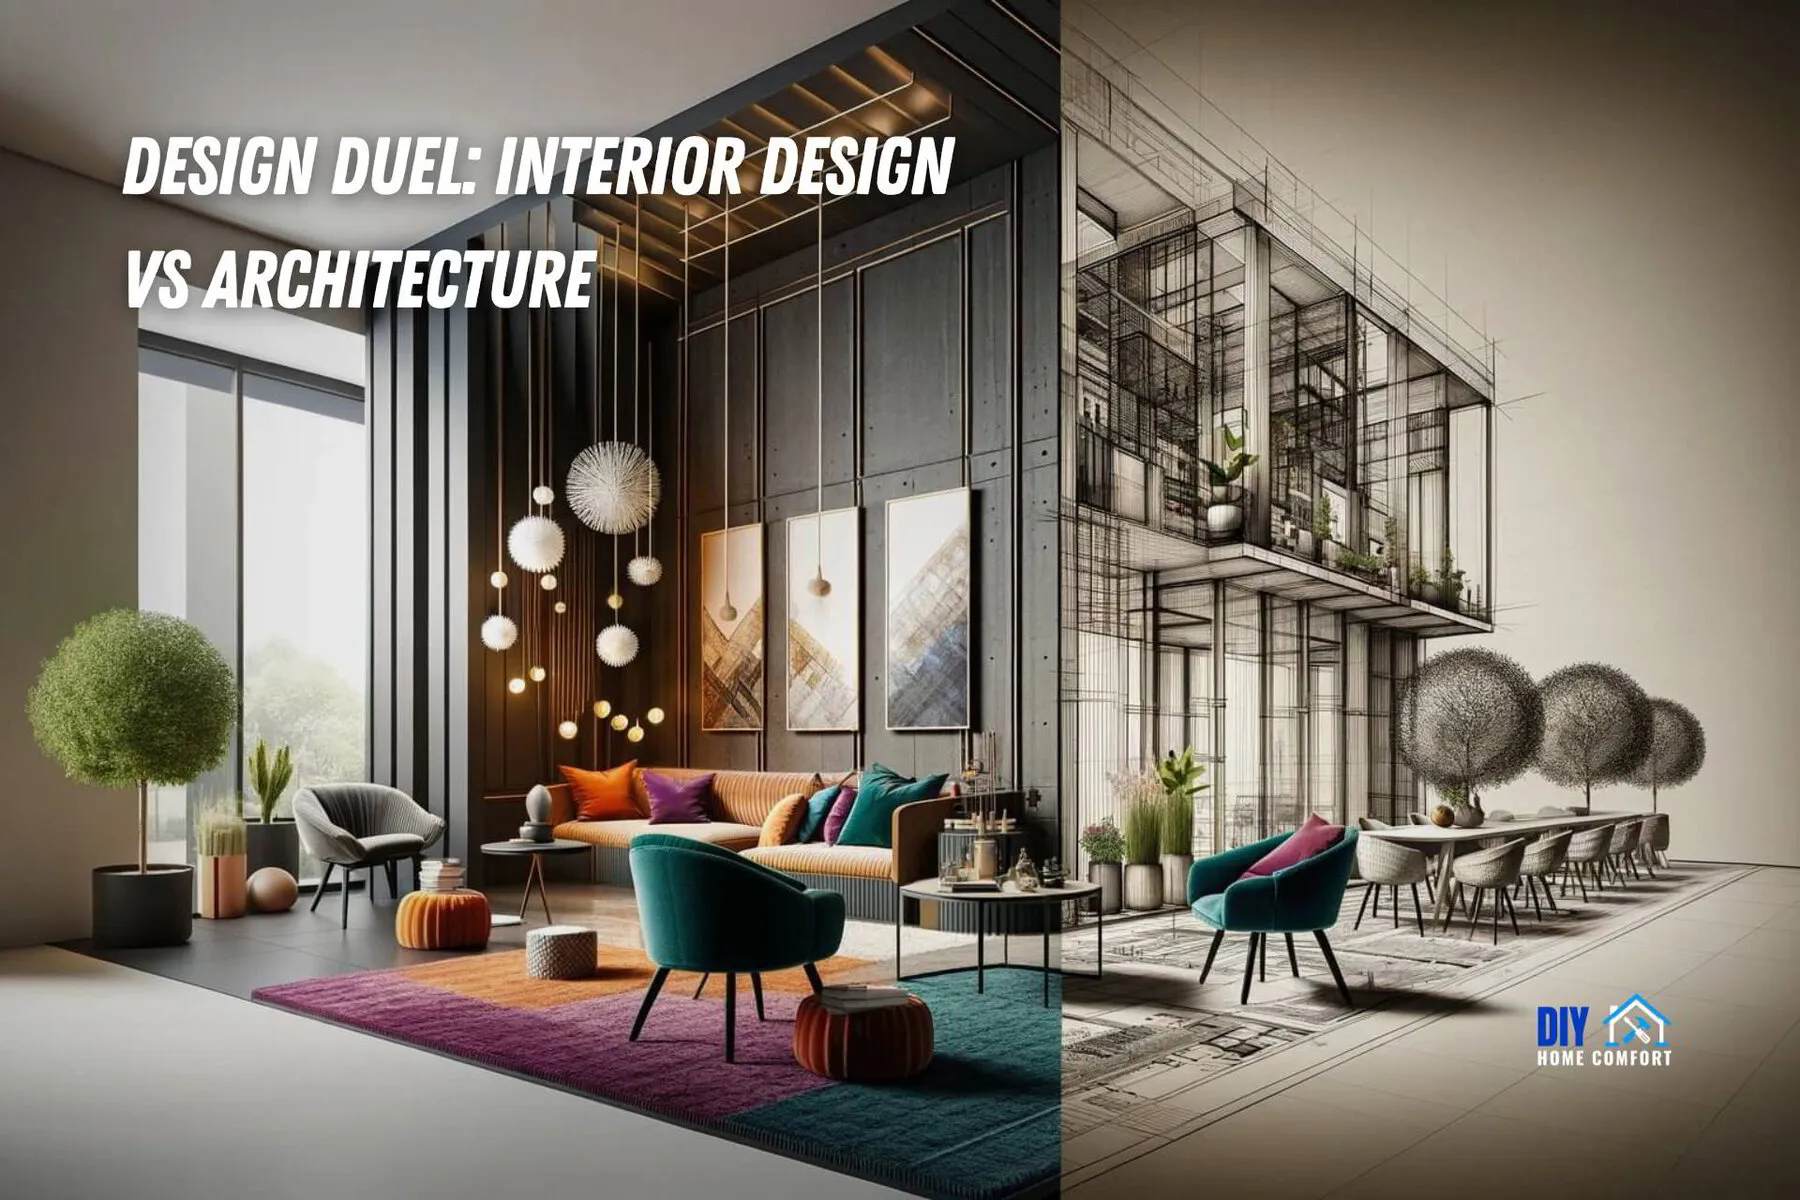 Design Duel: Interior Design vs Architecture | DIY Home Comfort